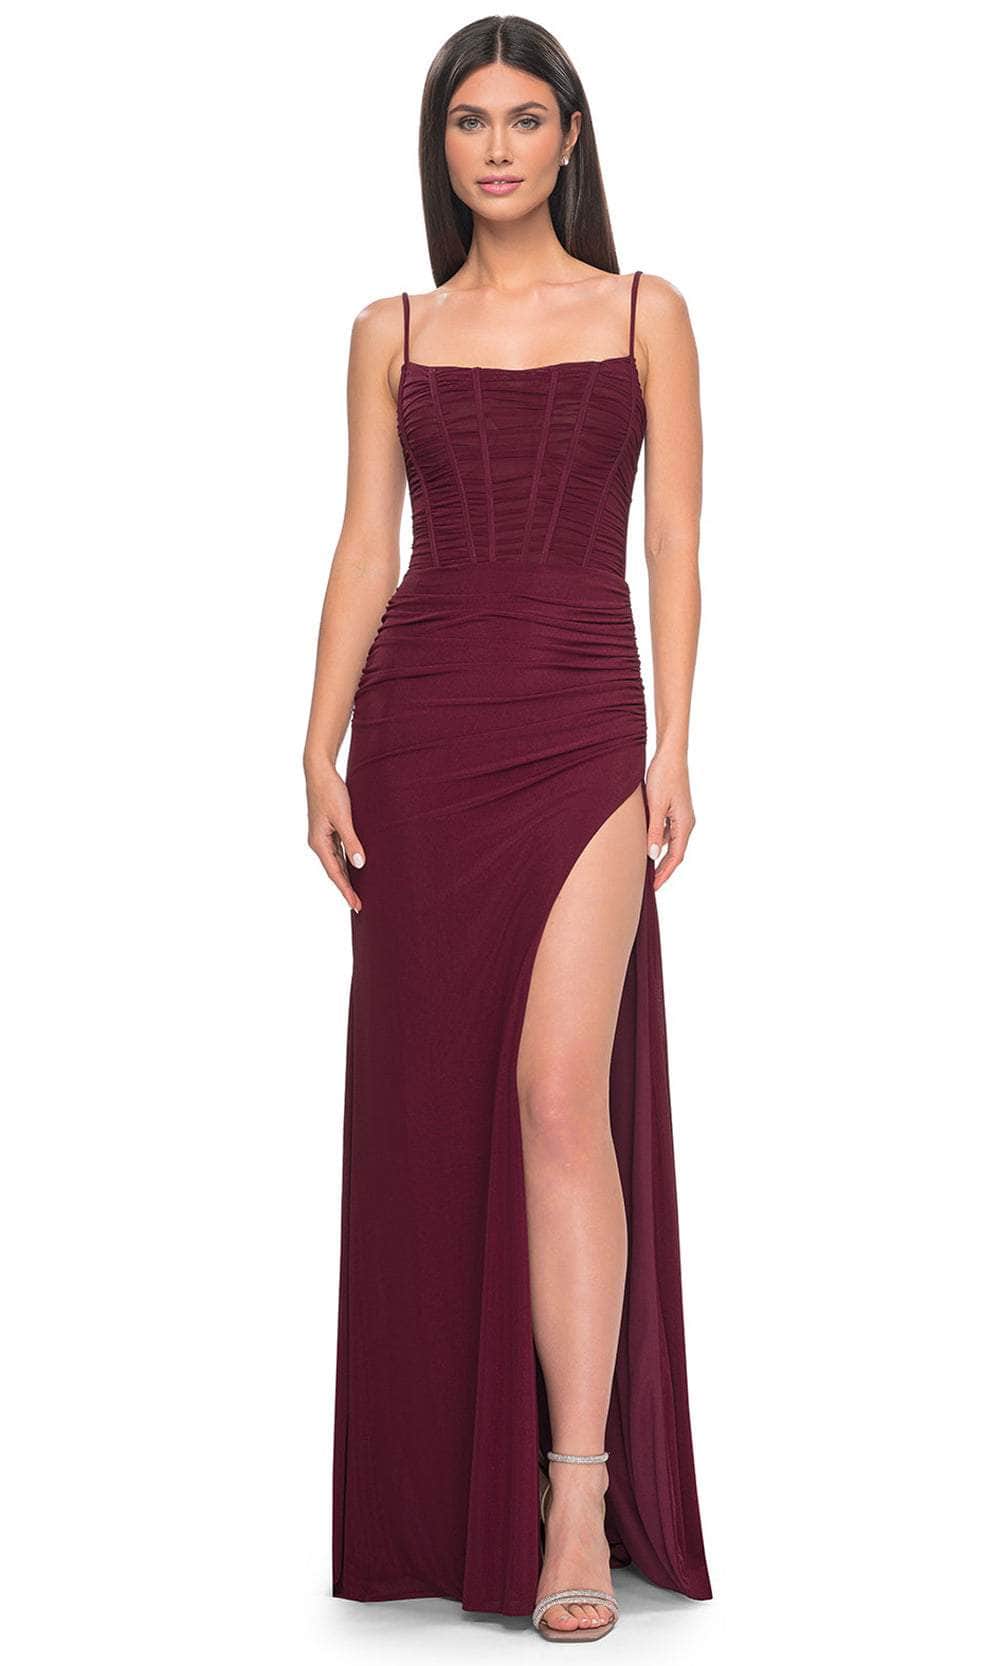 La Femme 32161 - Spaghetti Strap Corset Prom Dress Special Occasion Dress 00 / Wine